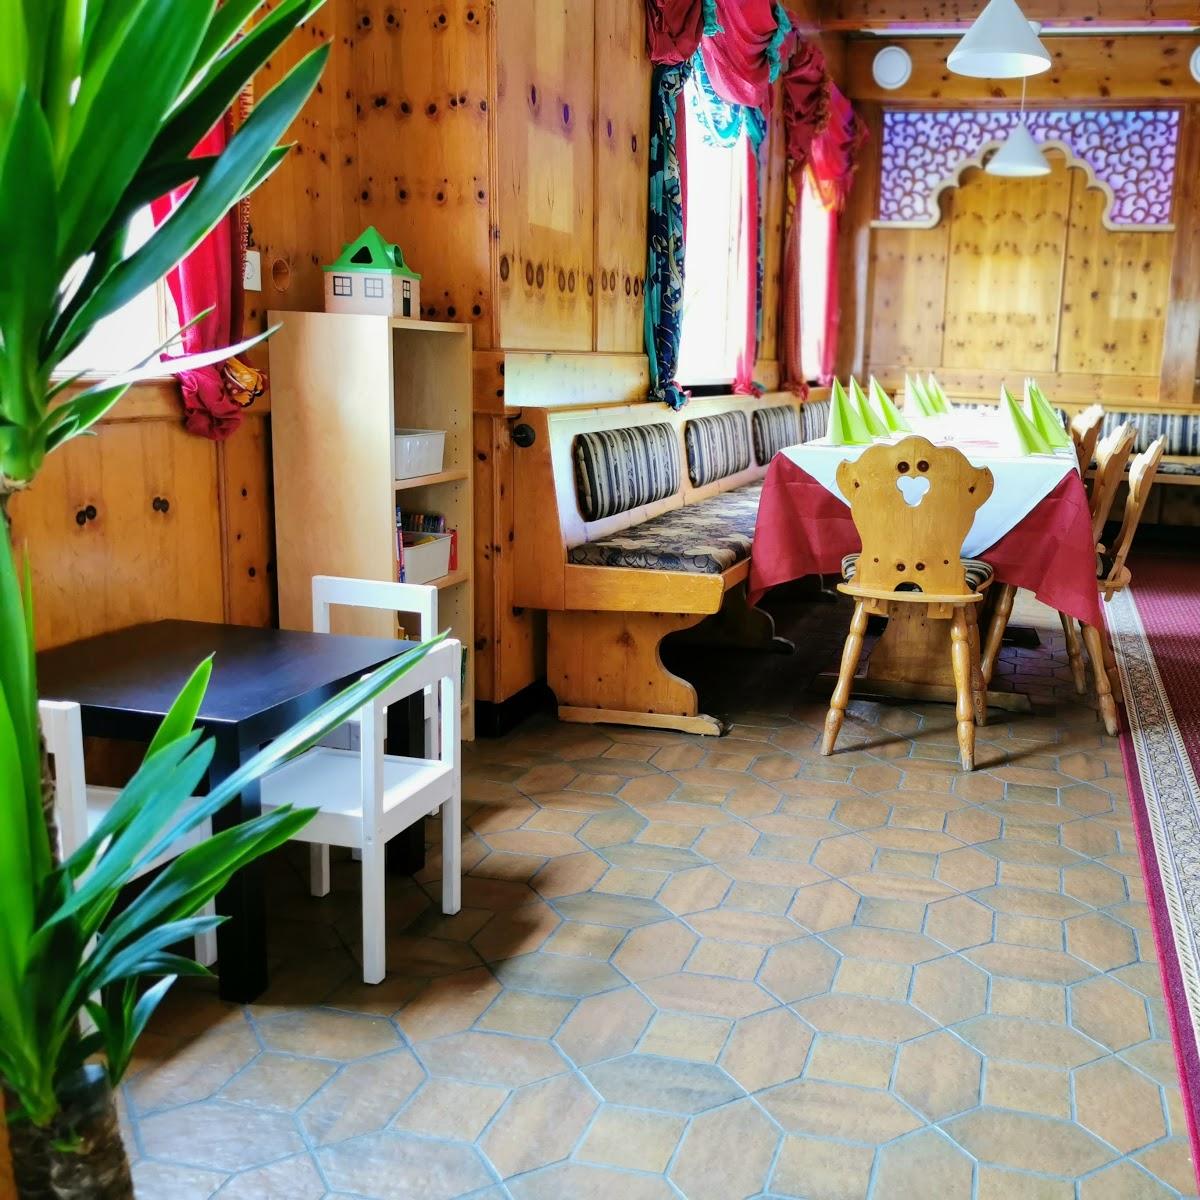 Restaurant "NURMAHAL Indisches Spezialitäten Restaurant" in Jesenwang